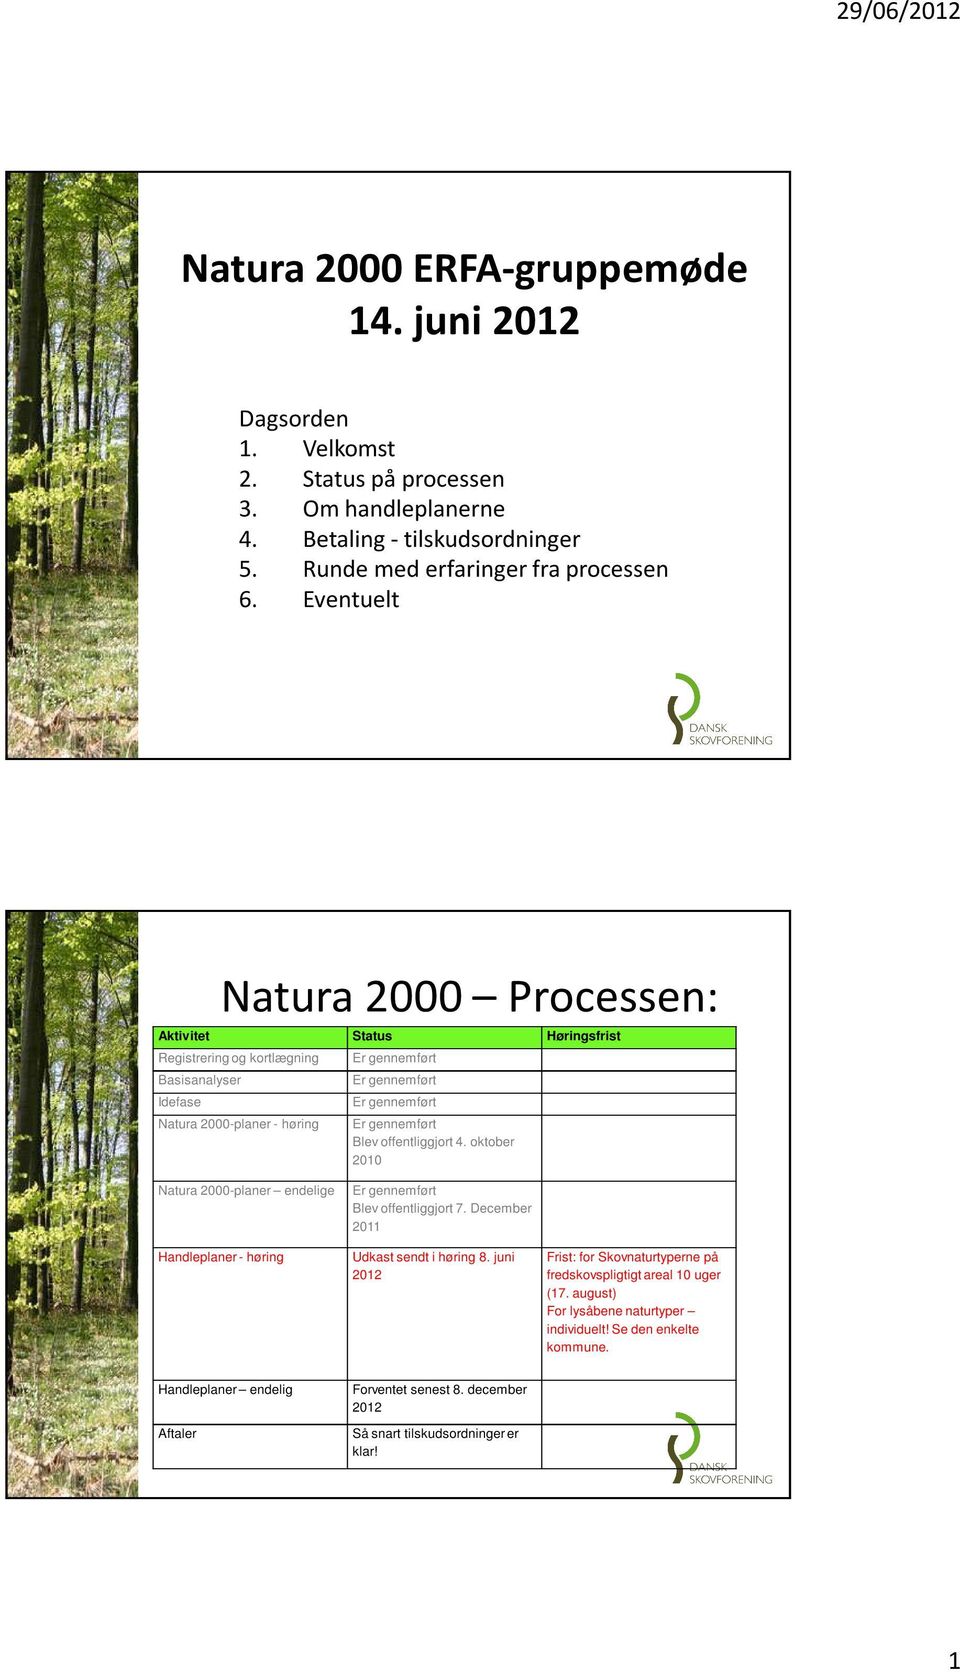 gennemført Blev offentliggjort 4. oktober 2010 Natura 2000-planer endelige Handleplaner - høring Er gennemført Blev offentliggjort 7. December 2011 Udkast sendt i høring 8.